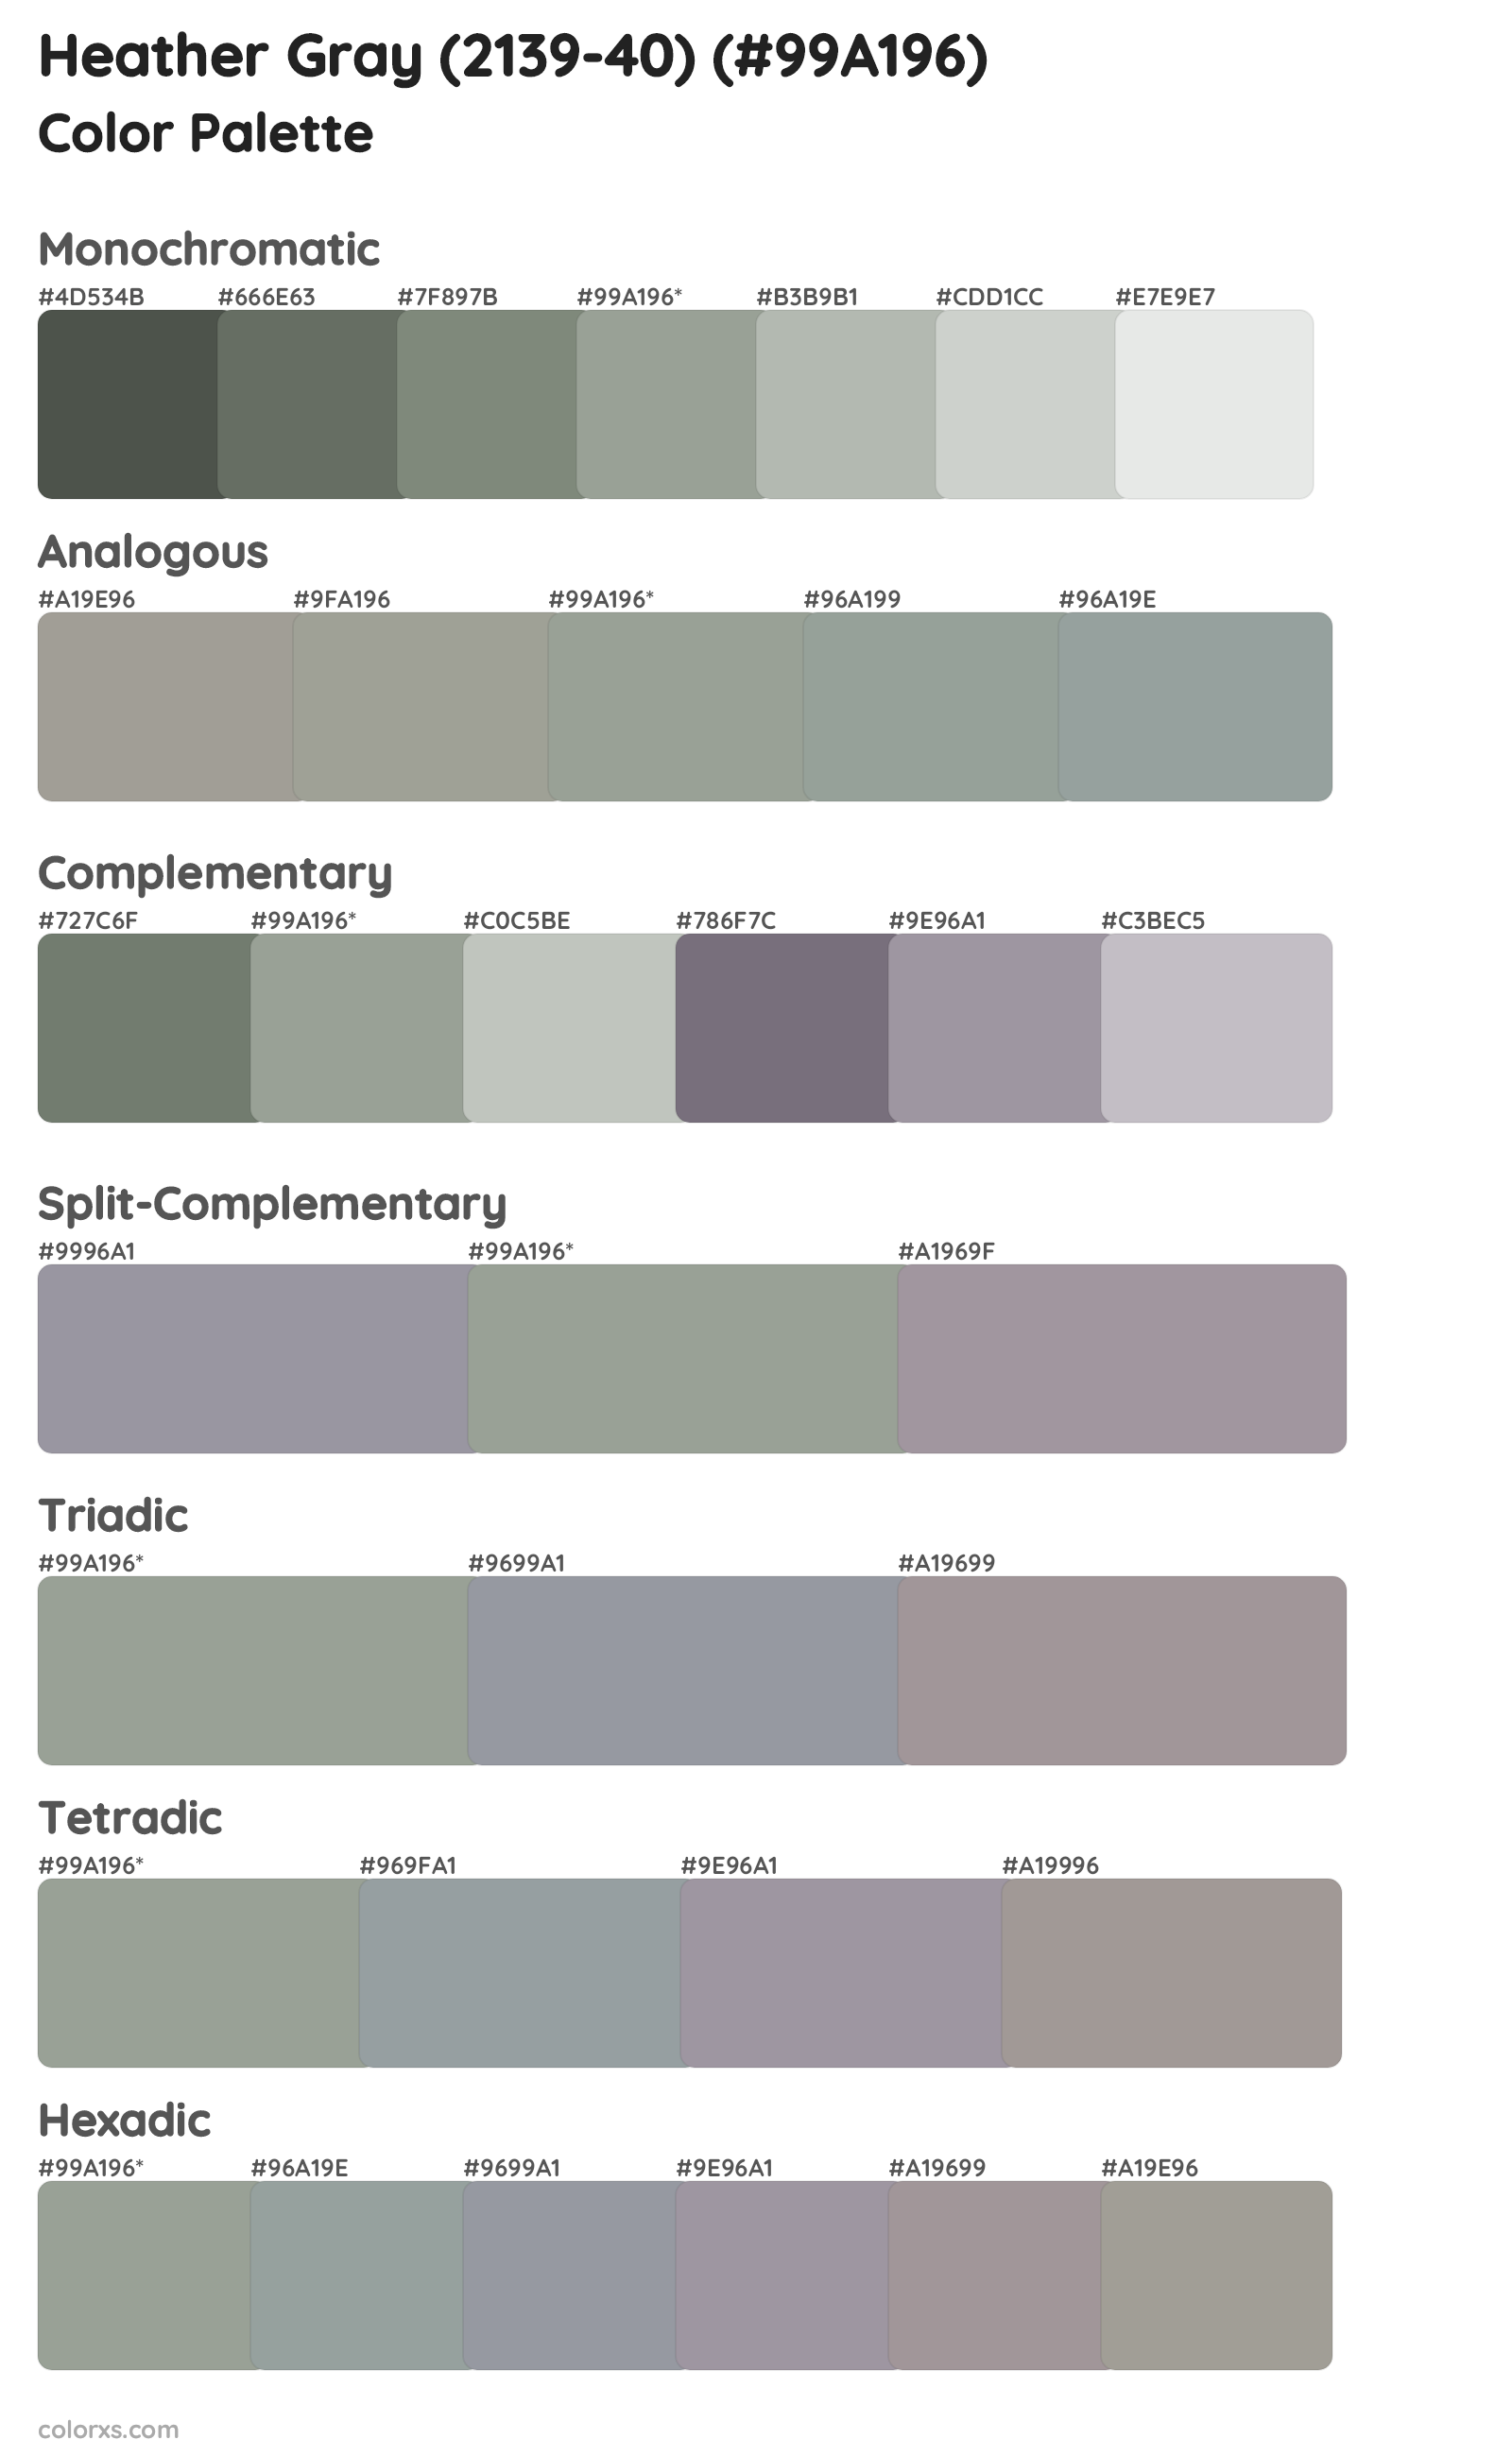 Heather Gray (2139-40) Color Scheme Palettes